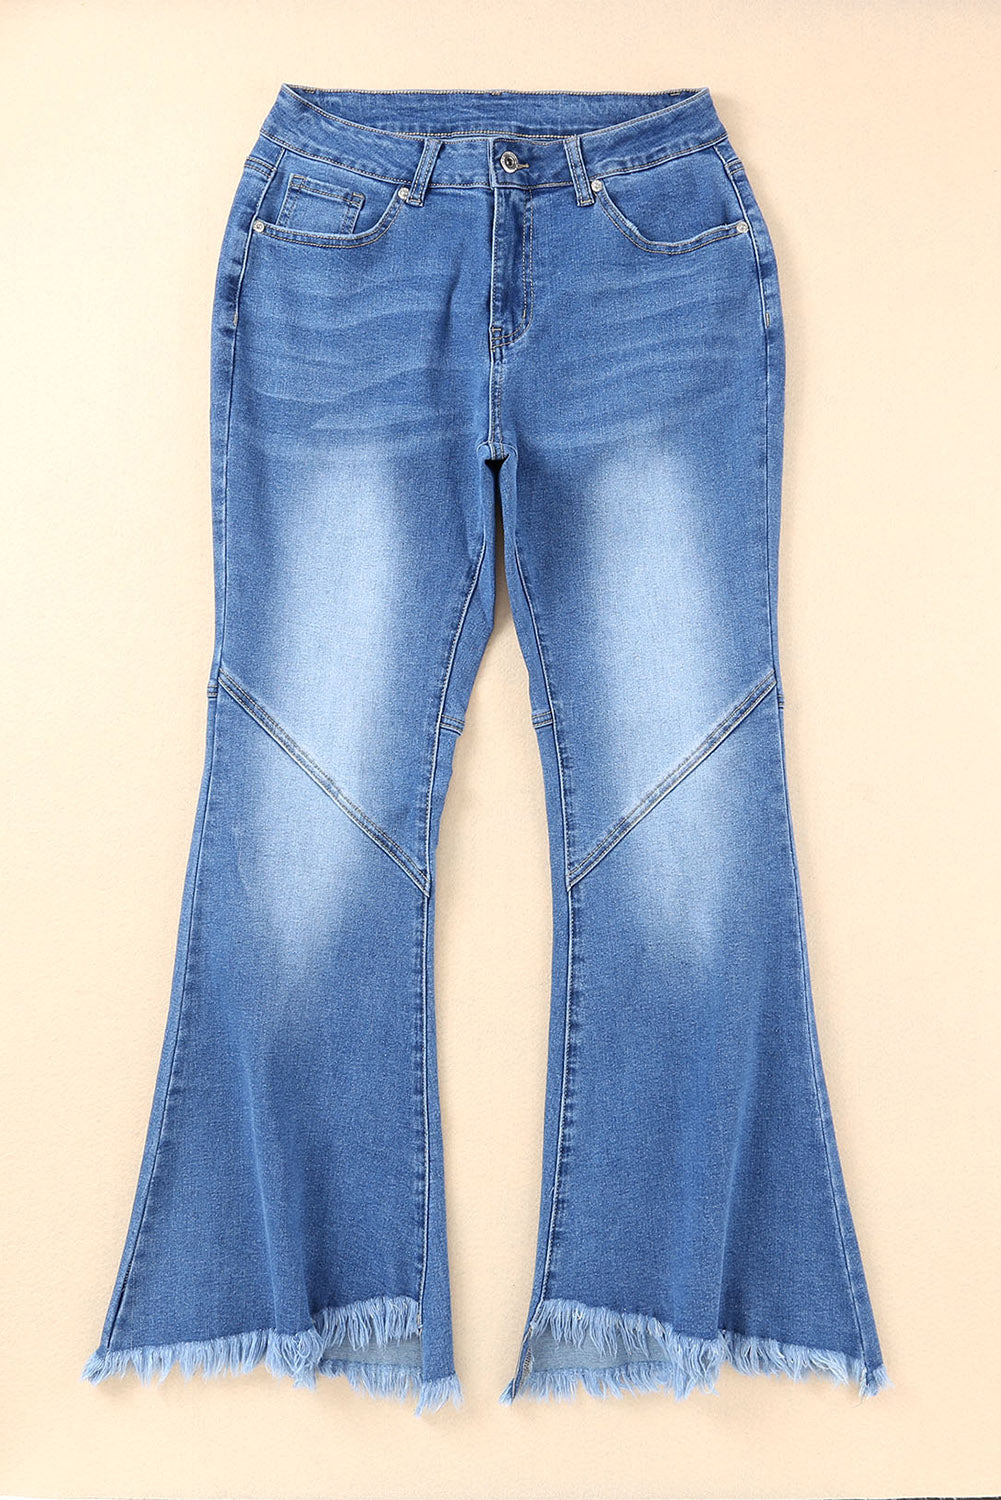 Sky Blue Vintage Frayed Tassel Bell Bottom Pants Jeans JT's Designer Fashion